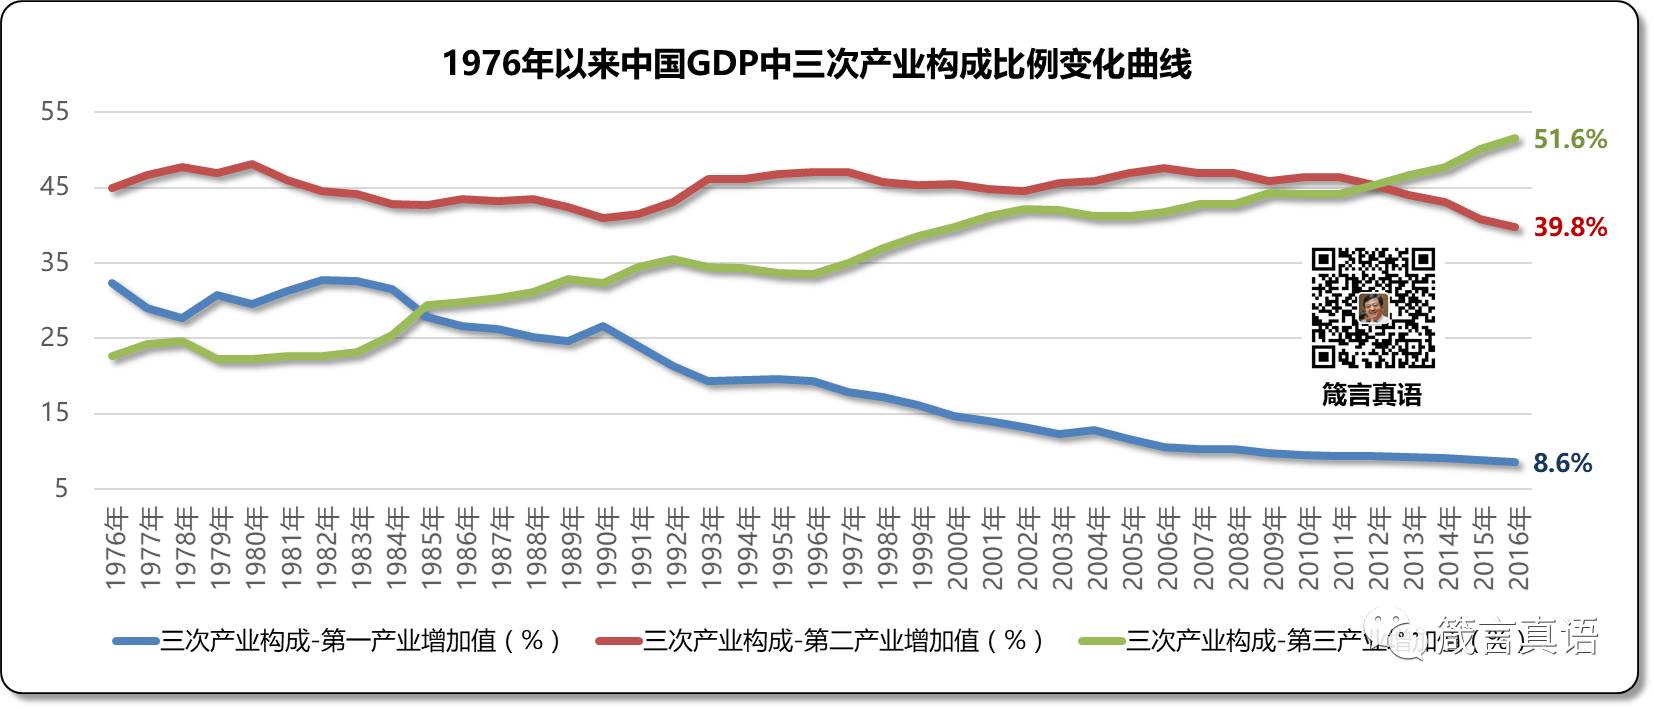 中国gdp中三次产业构成比例变化曲线